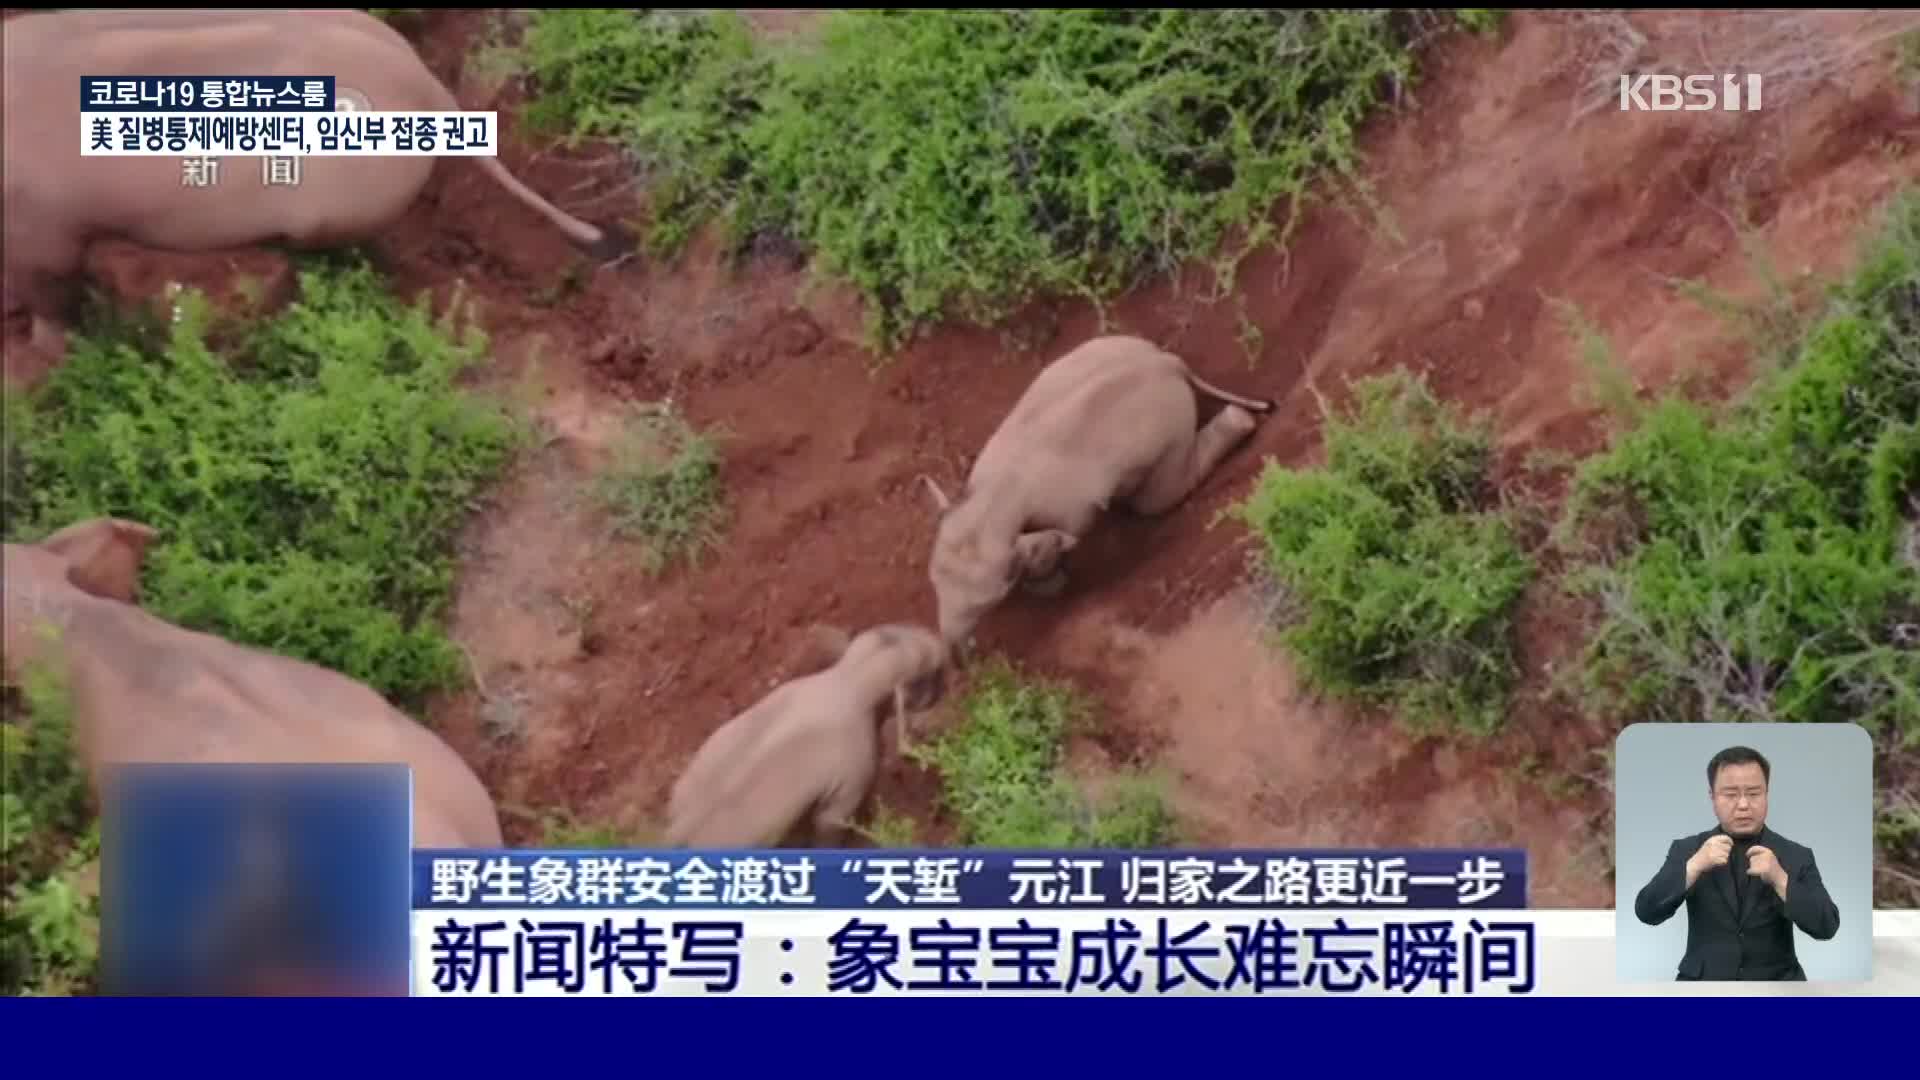 中 윈난성 야생 아시아 코끼리떼 귀향길 올라